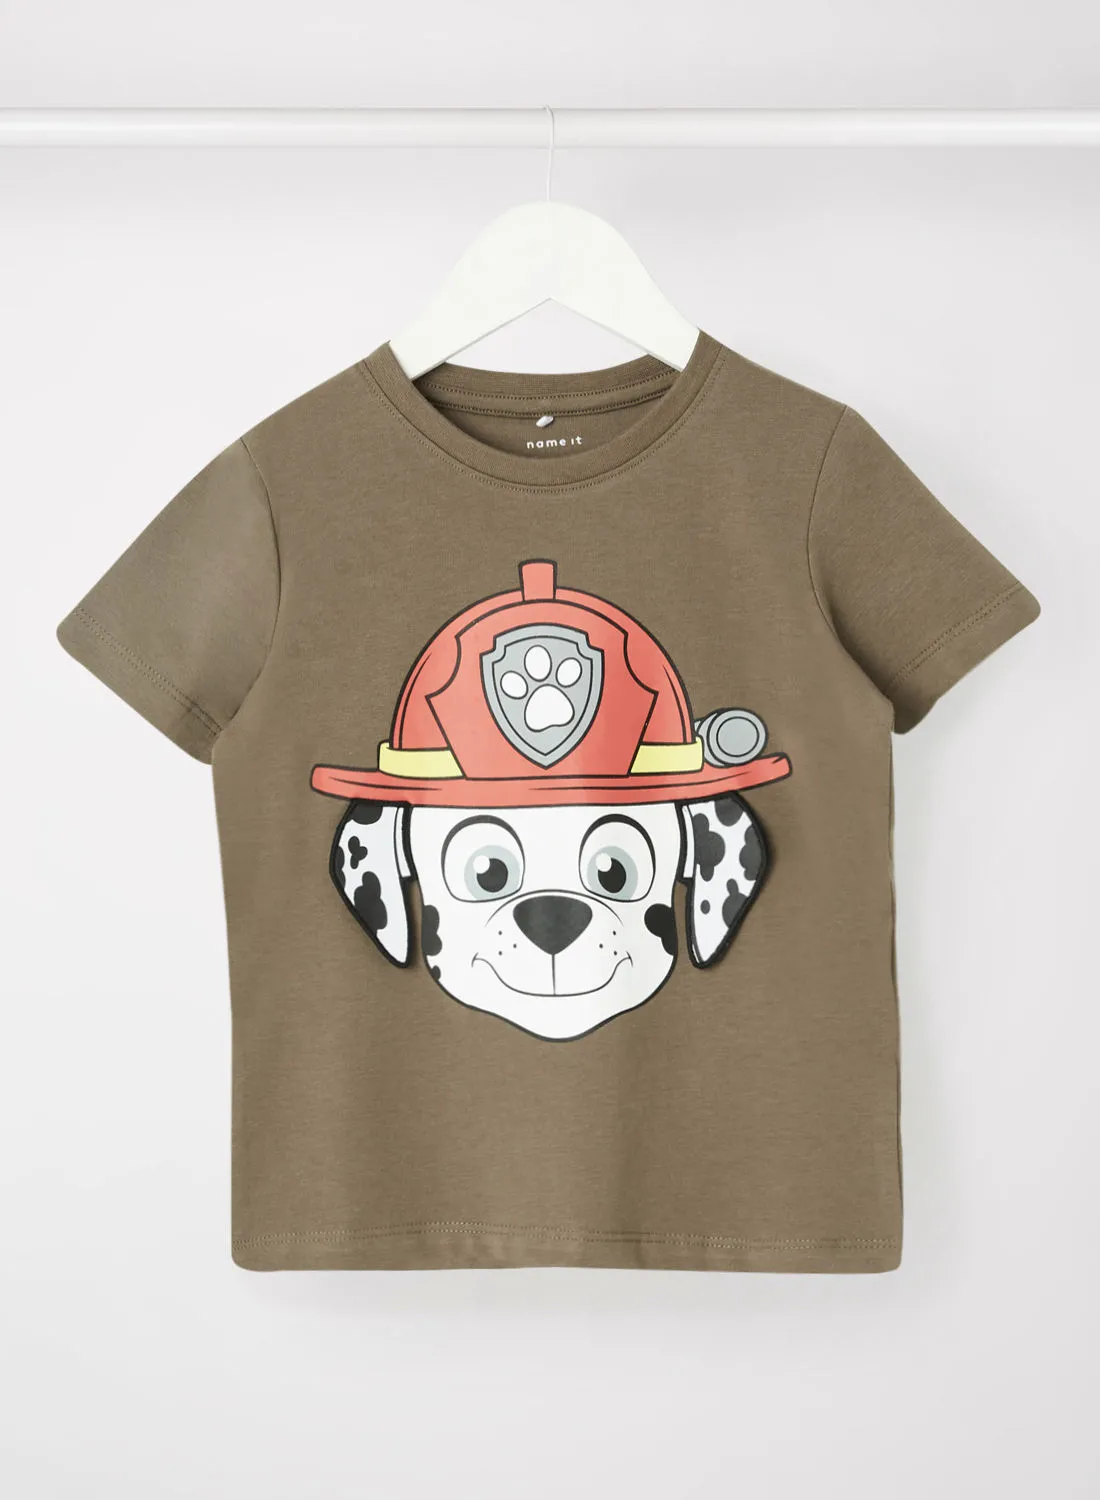 NAME IT Baby/Kids Paw Patrol Printed T-Shirt Brown